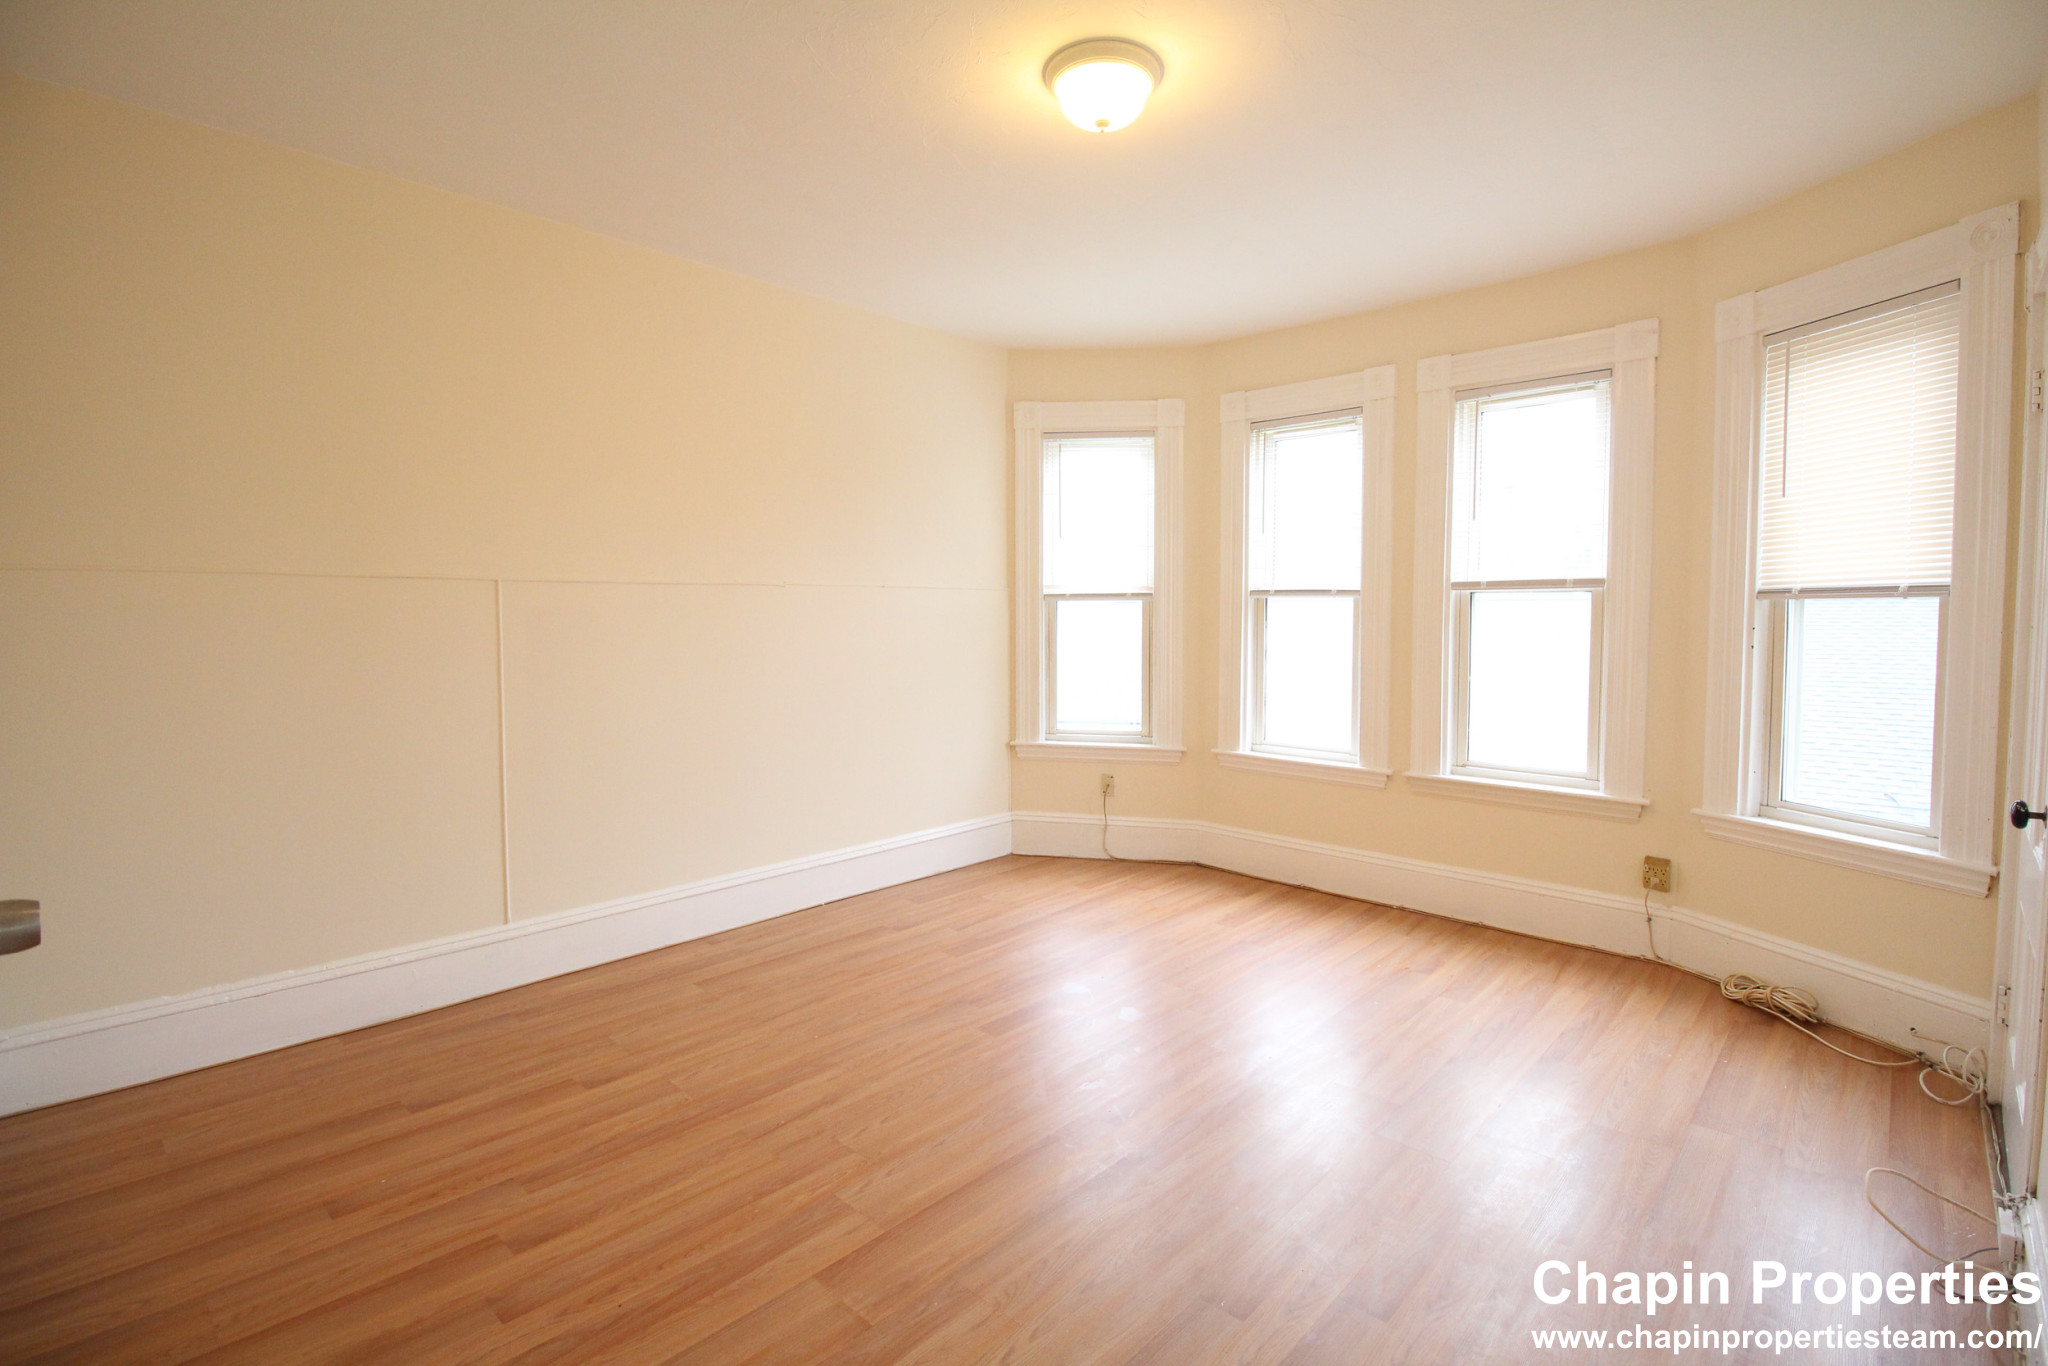 Photos of apartment on Saint James Pl.,Boston MA 02119